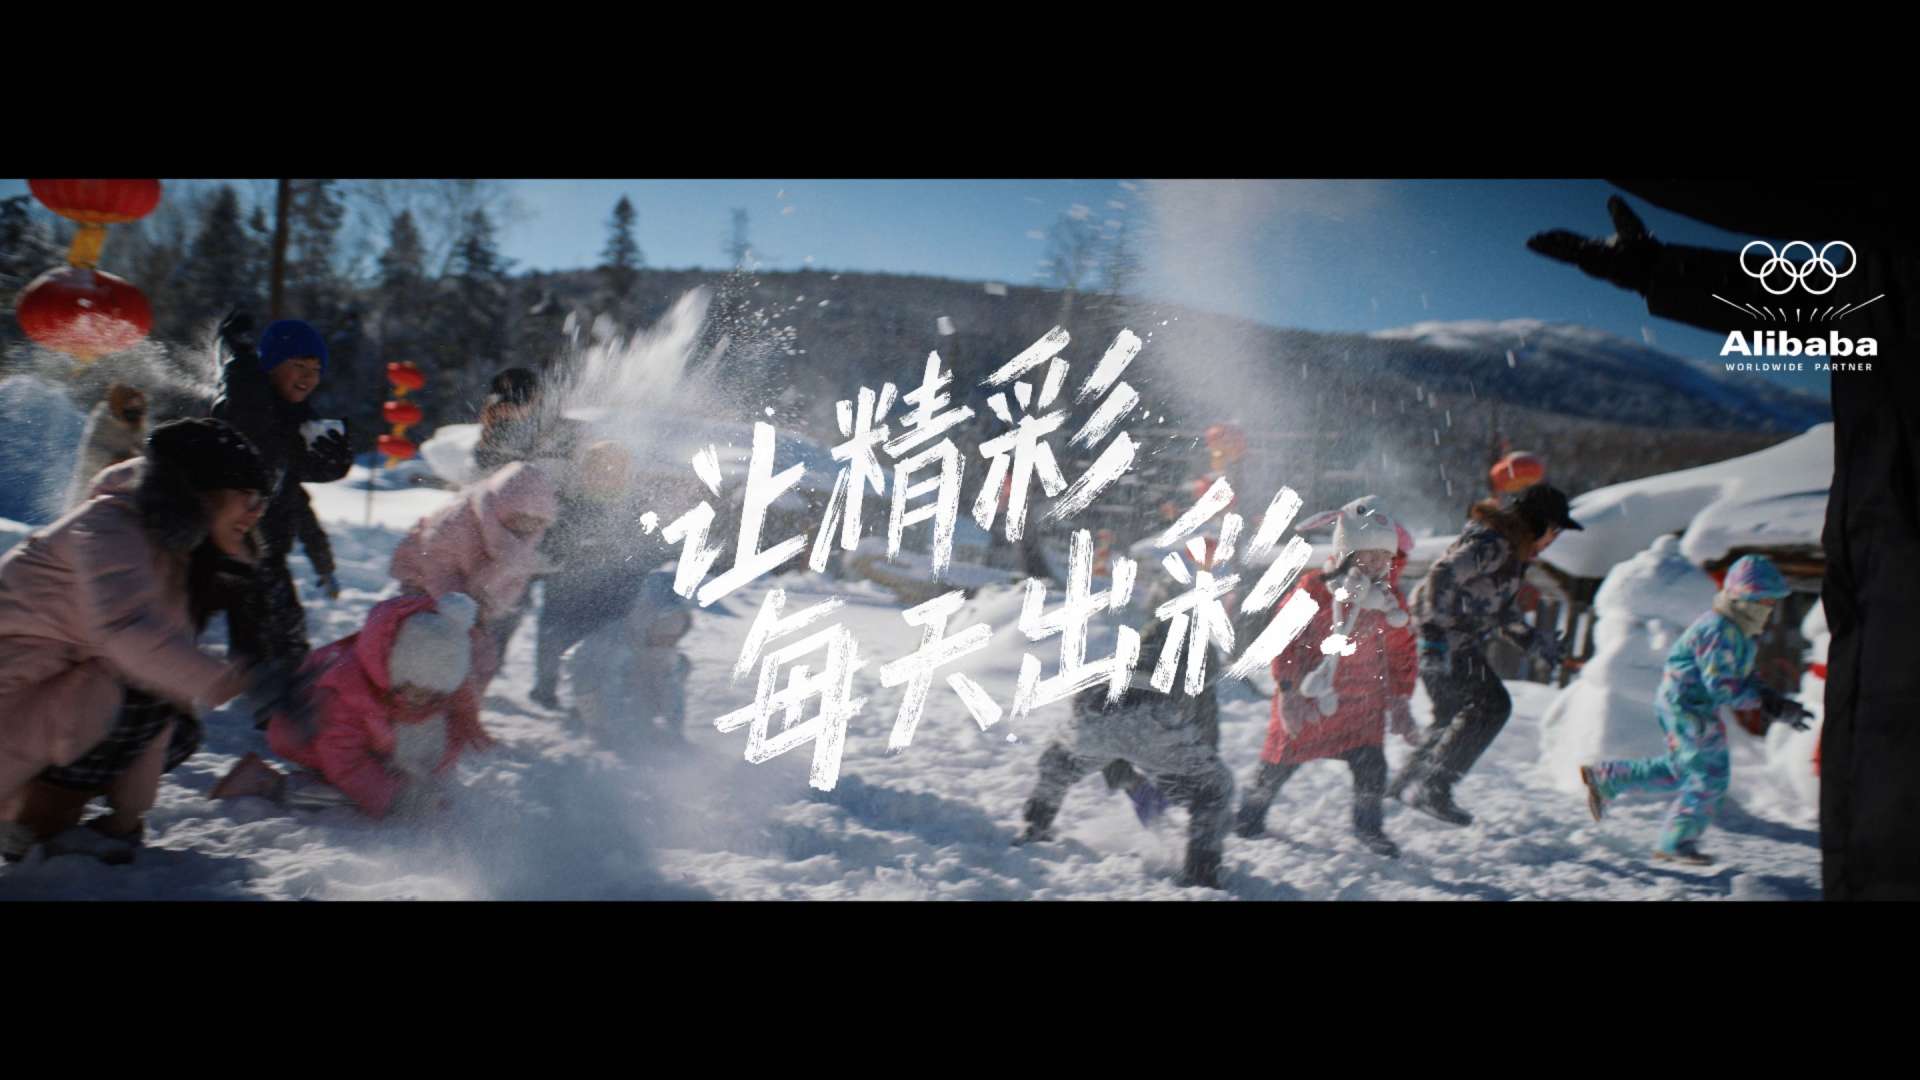 阿里巴巴 × 北京2022年冬奥会 -《主张篇》